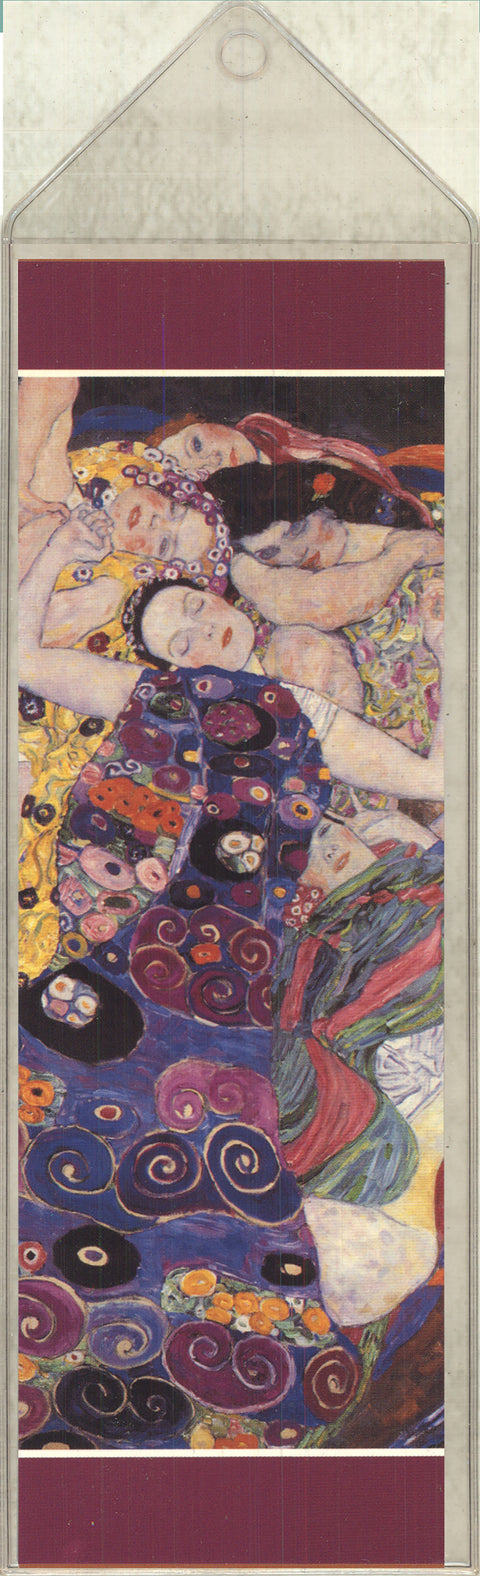 Gustav Klimt Virgins